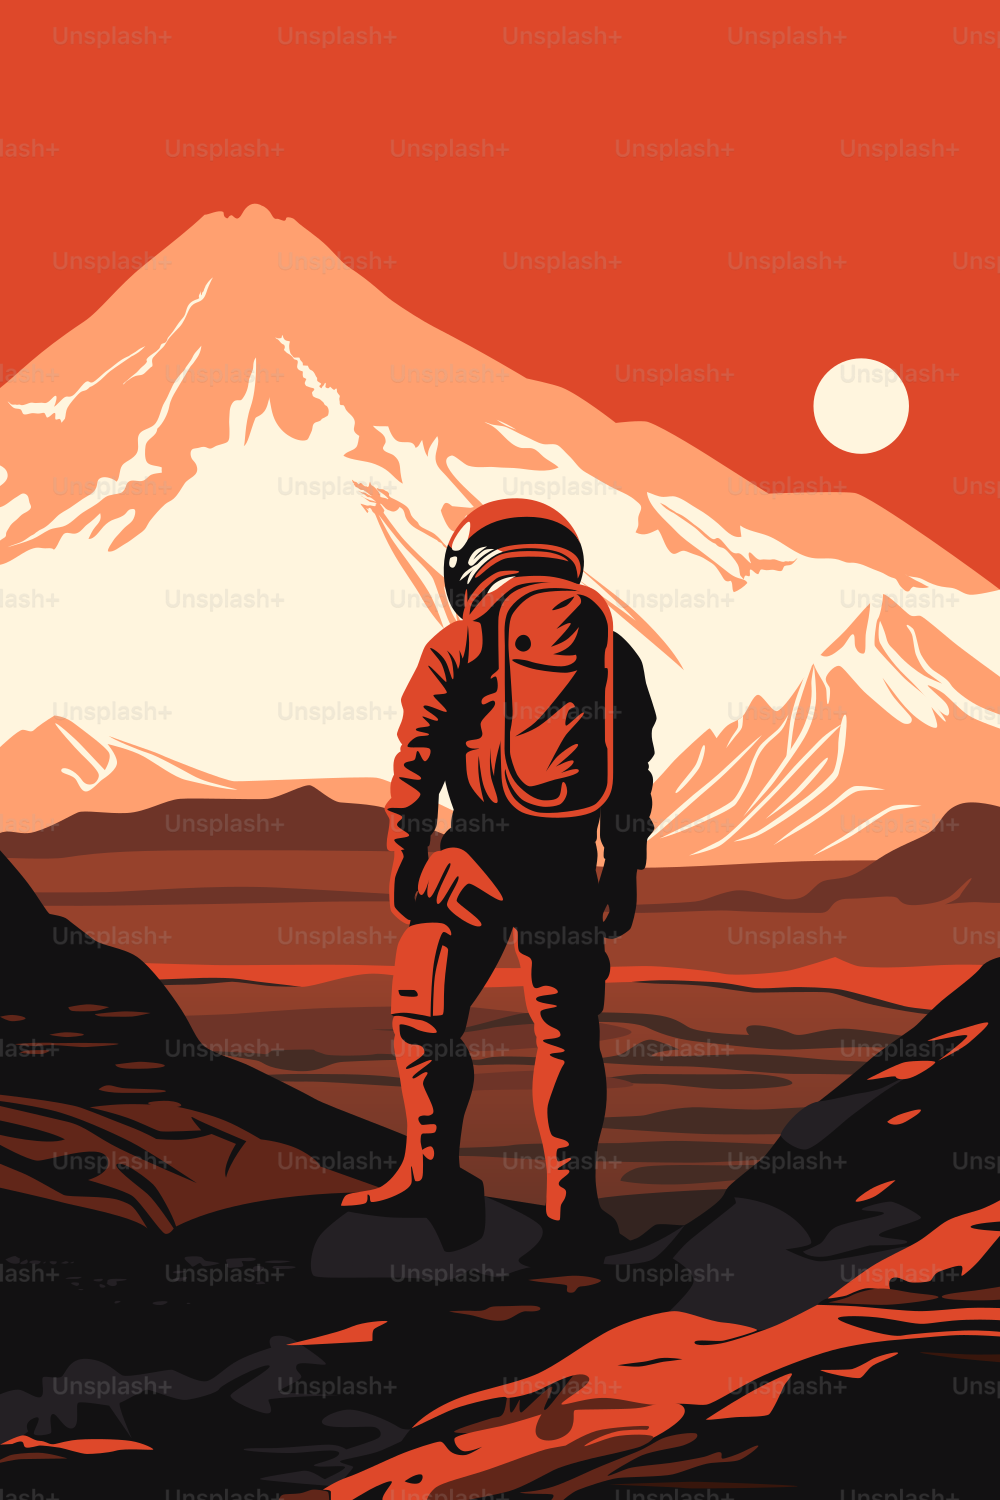 Cartaz da Colonização de Marte. Exploração do Sistema Solar Humano. Astronauta na superfície do Planeta Vermelho, olhando para sua paisagem. Sol distante nos céus.